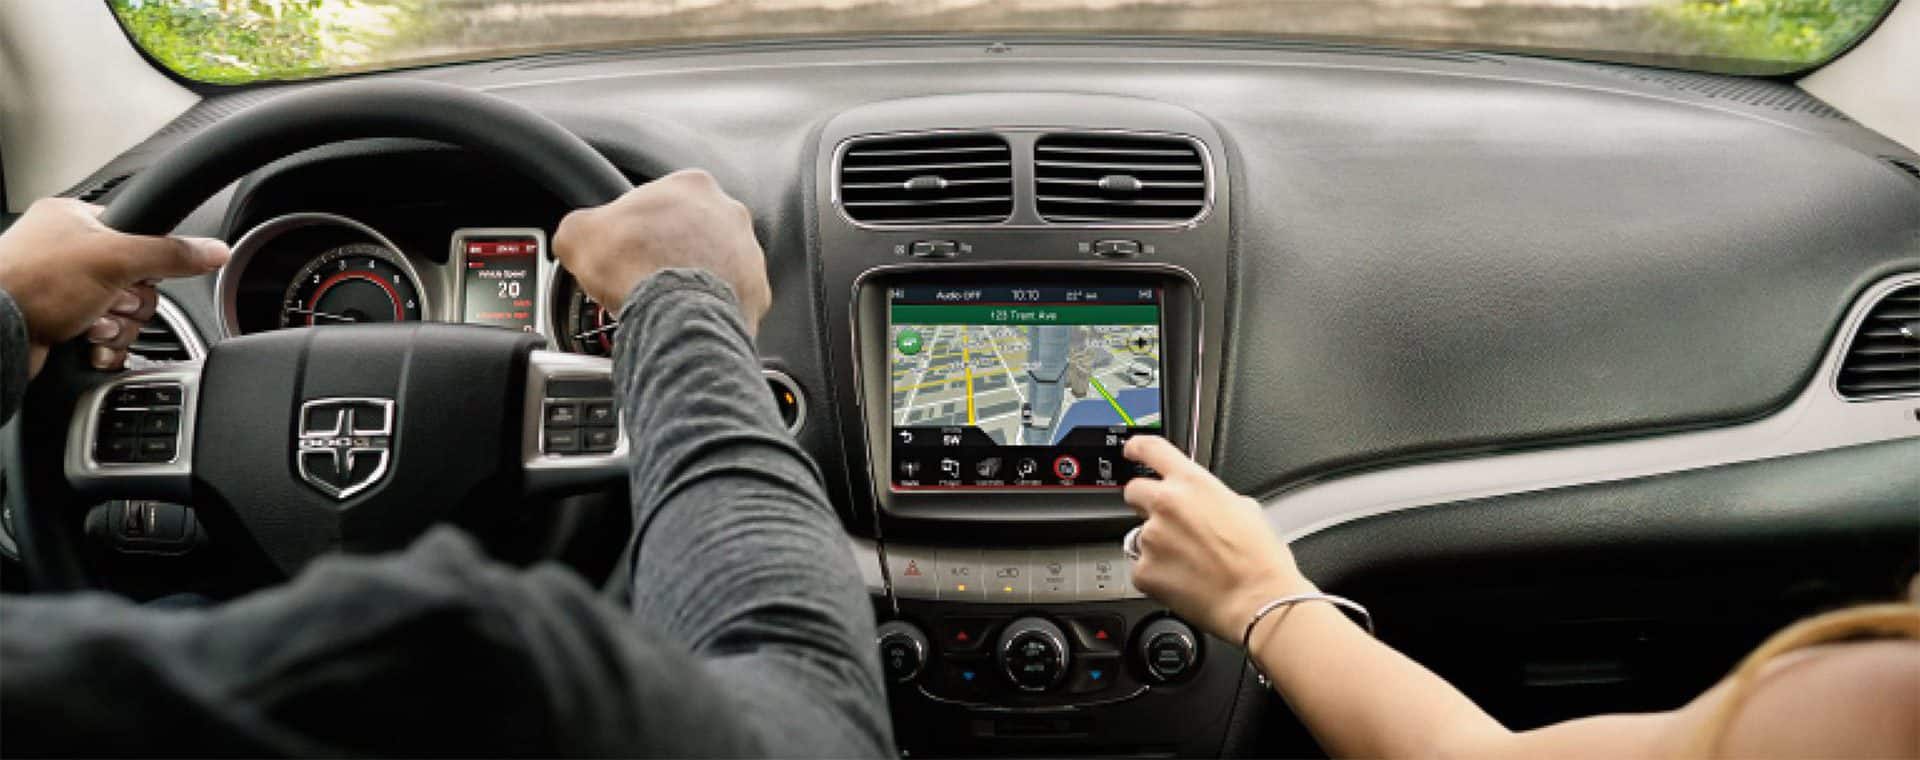 Uconnect - Dodge Uconnect System Navigation Features